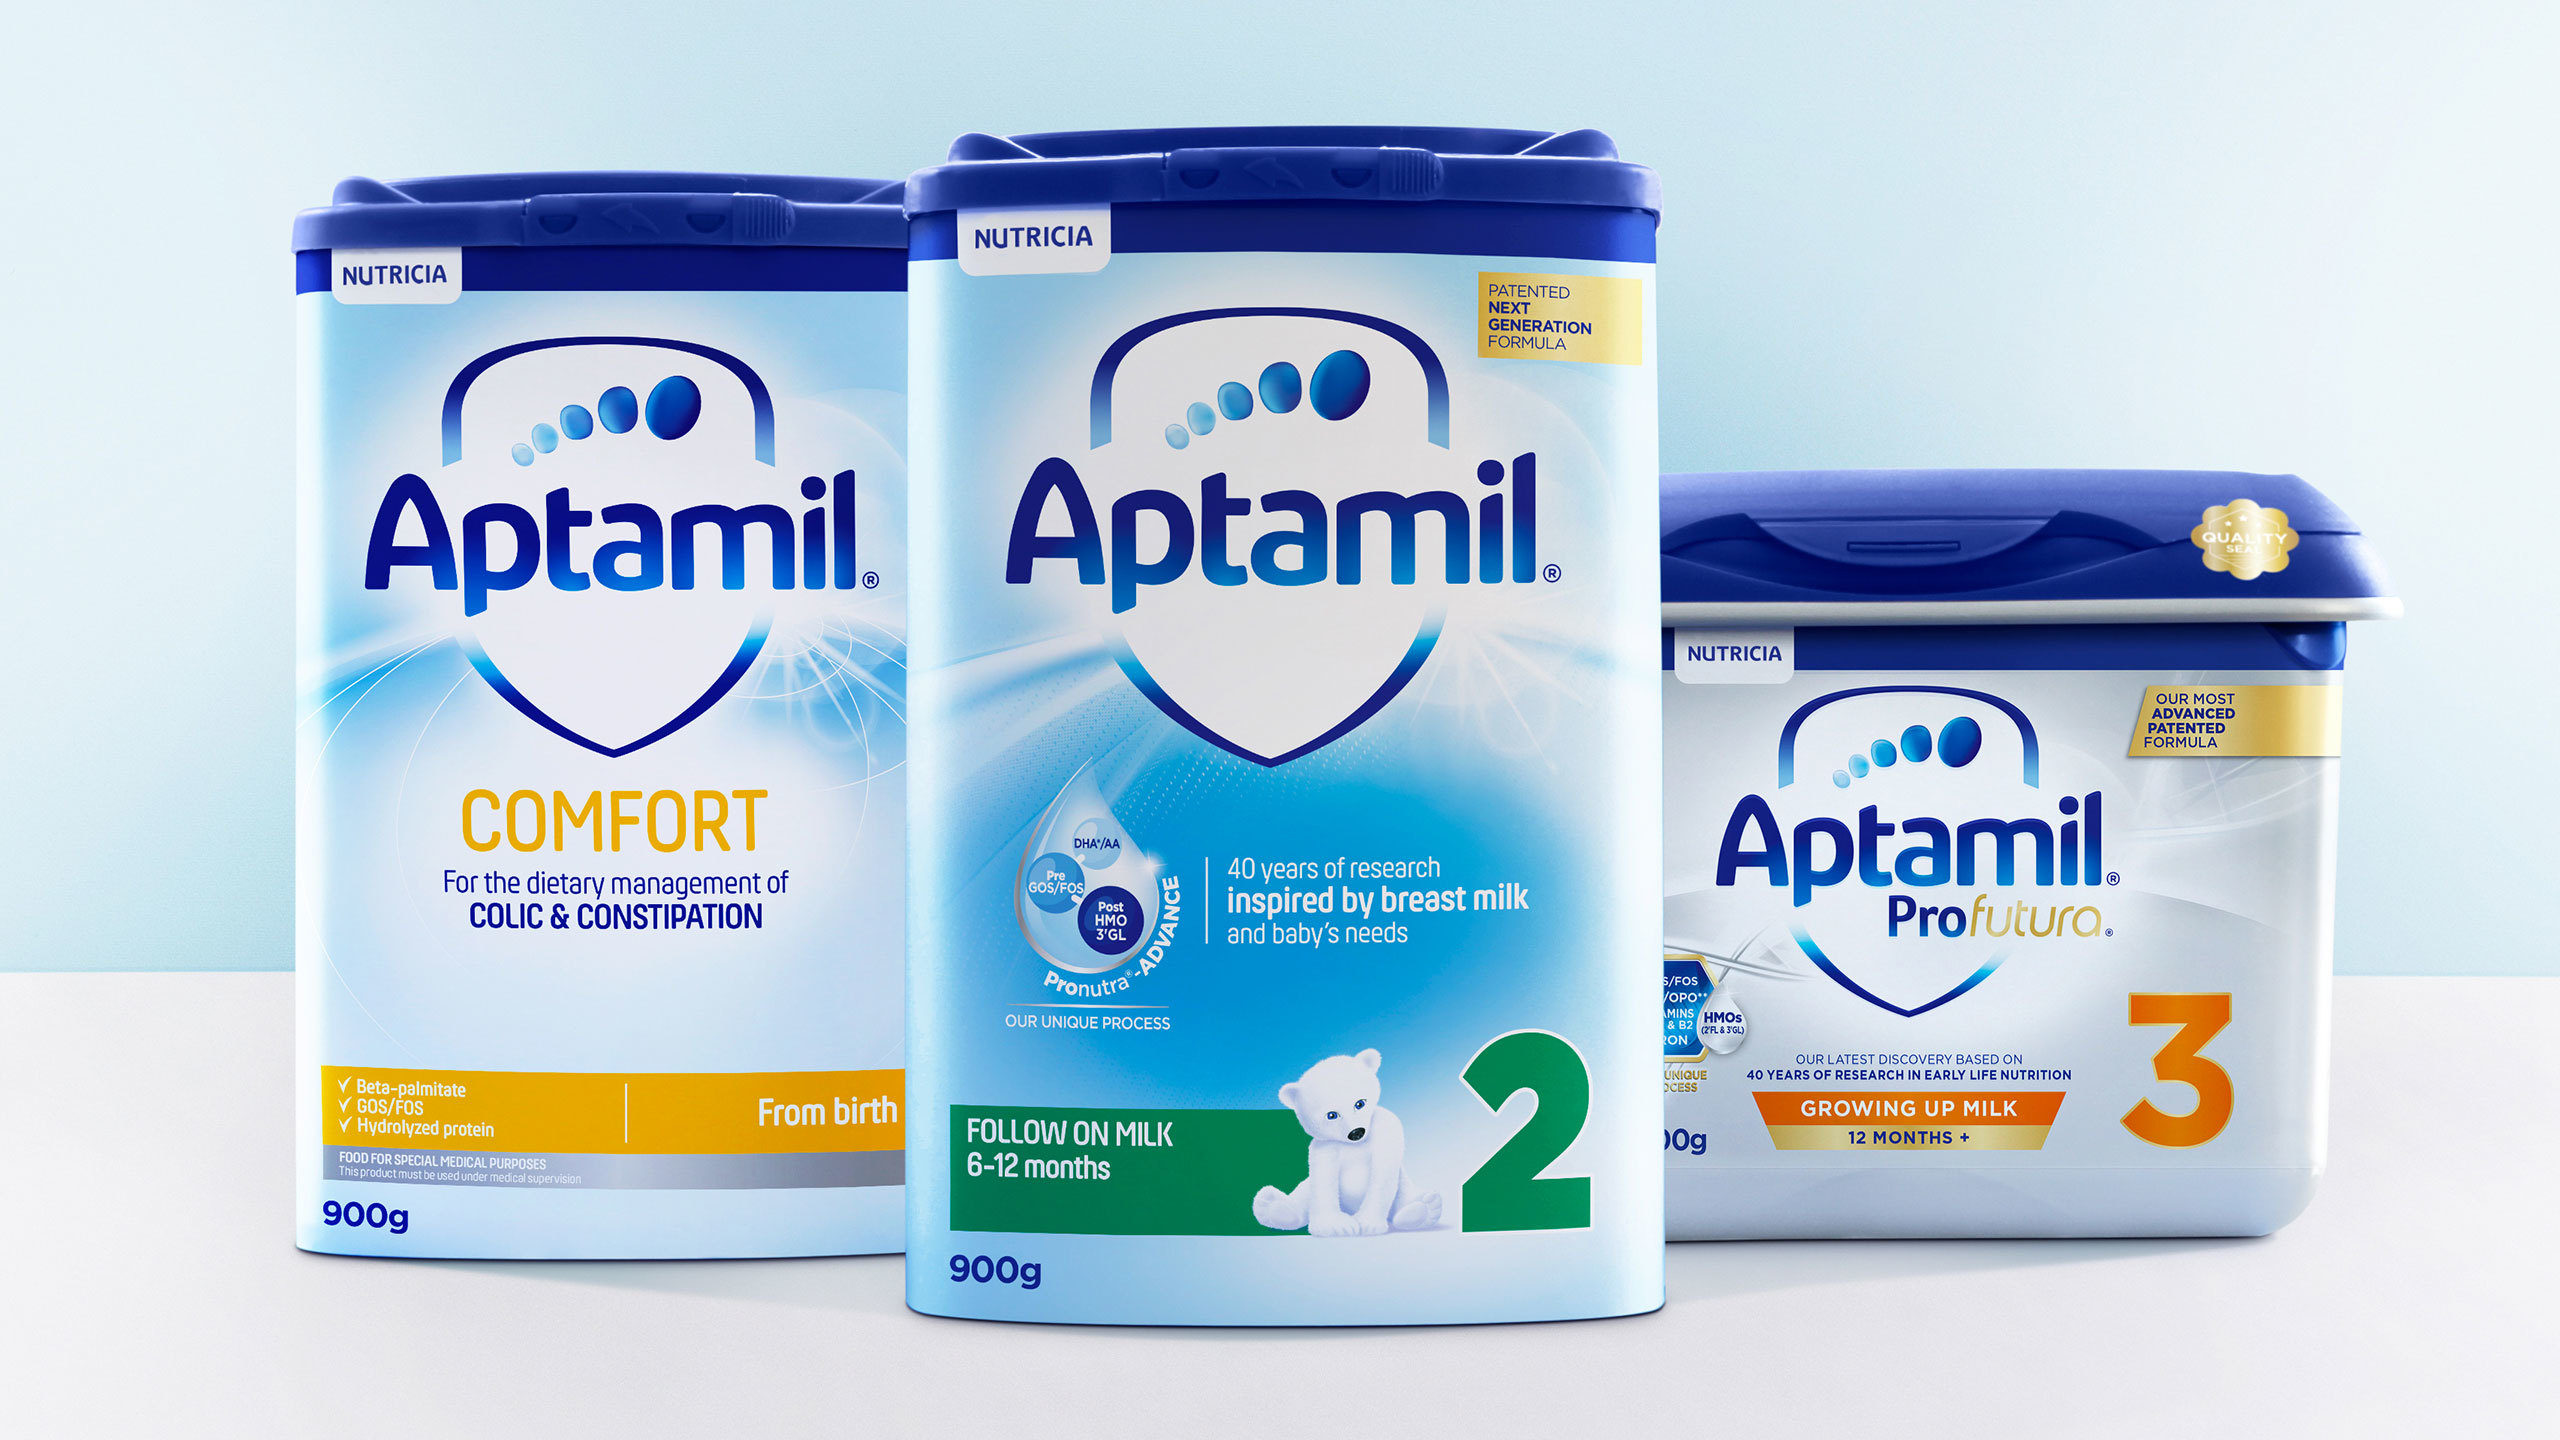 Sữa Aptamil liên tục phát triển - Tiết lộ mục đích thương hiệu mới